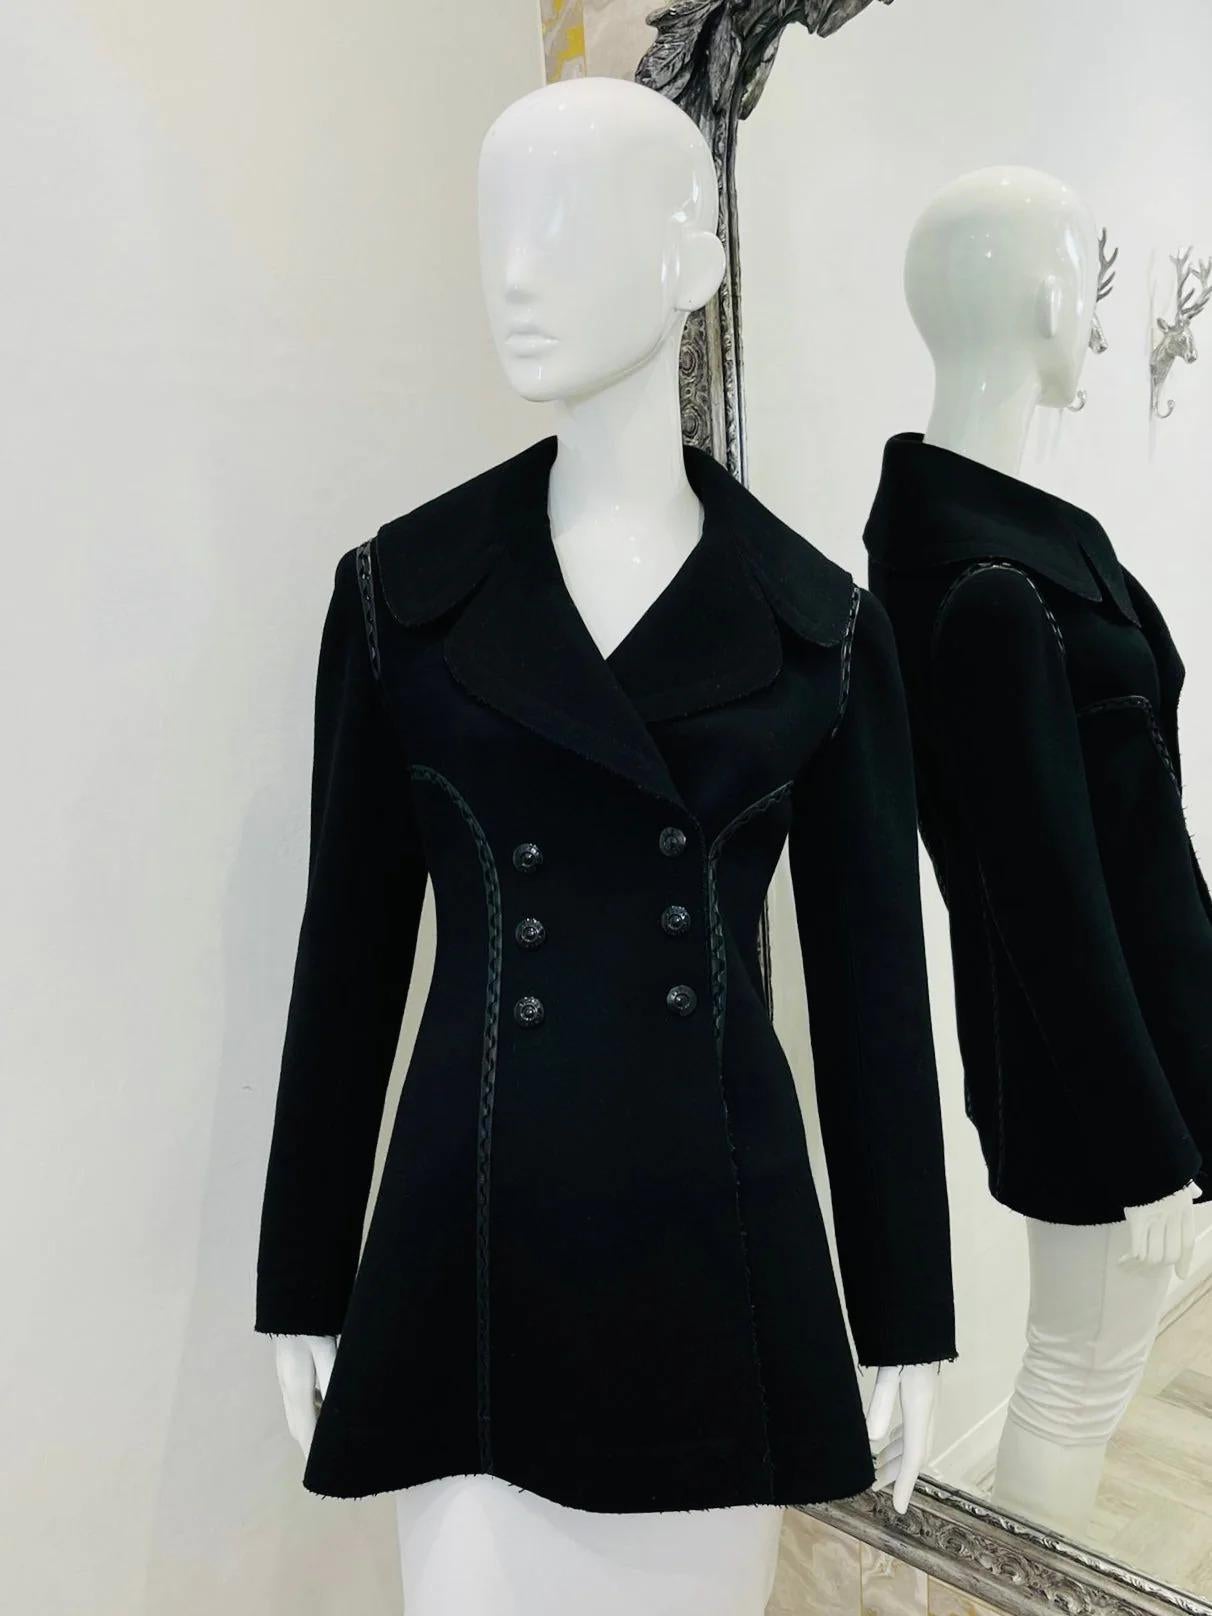 Alaia Manteau en laine avec garniture en cuir

Coupe évasée noire, double boutonnage.

Informations complémentaires :
Taille - 38FR (plus petit)
Composition - Laine, cuir
Condit - Très bon (légers signes d'usure)